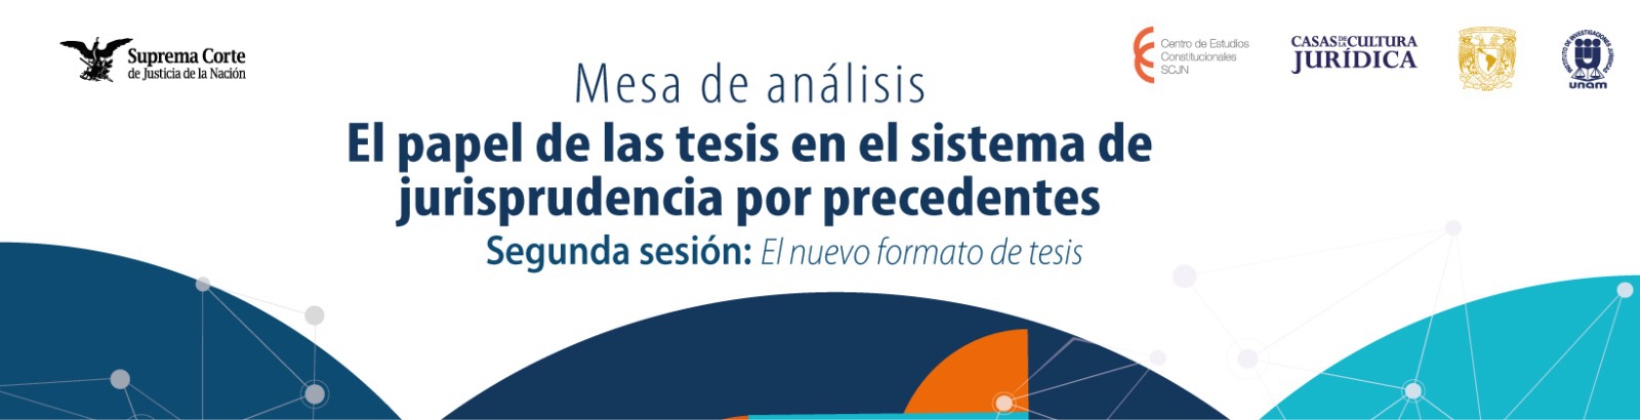 Banner de la Mesa de Análisis: El papel de las tesis en el sistema de jurisprudencia por precedentes. Segunda sesión: Nuevo formato de tesis